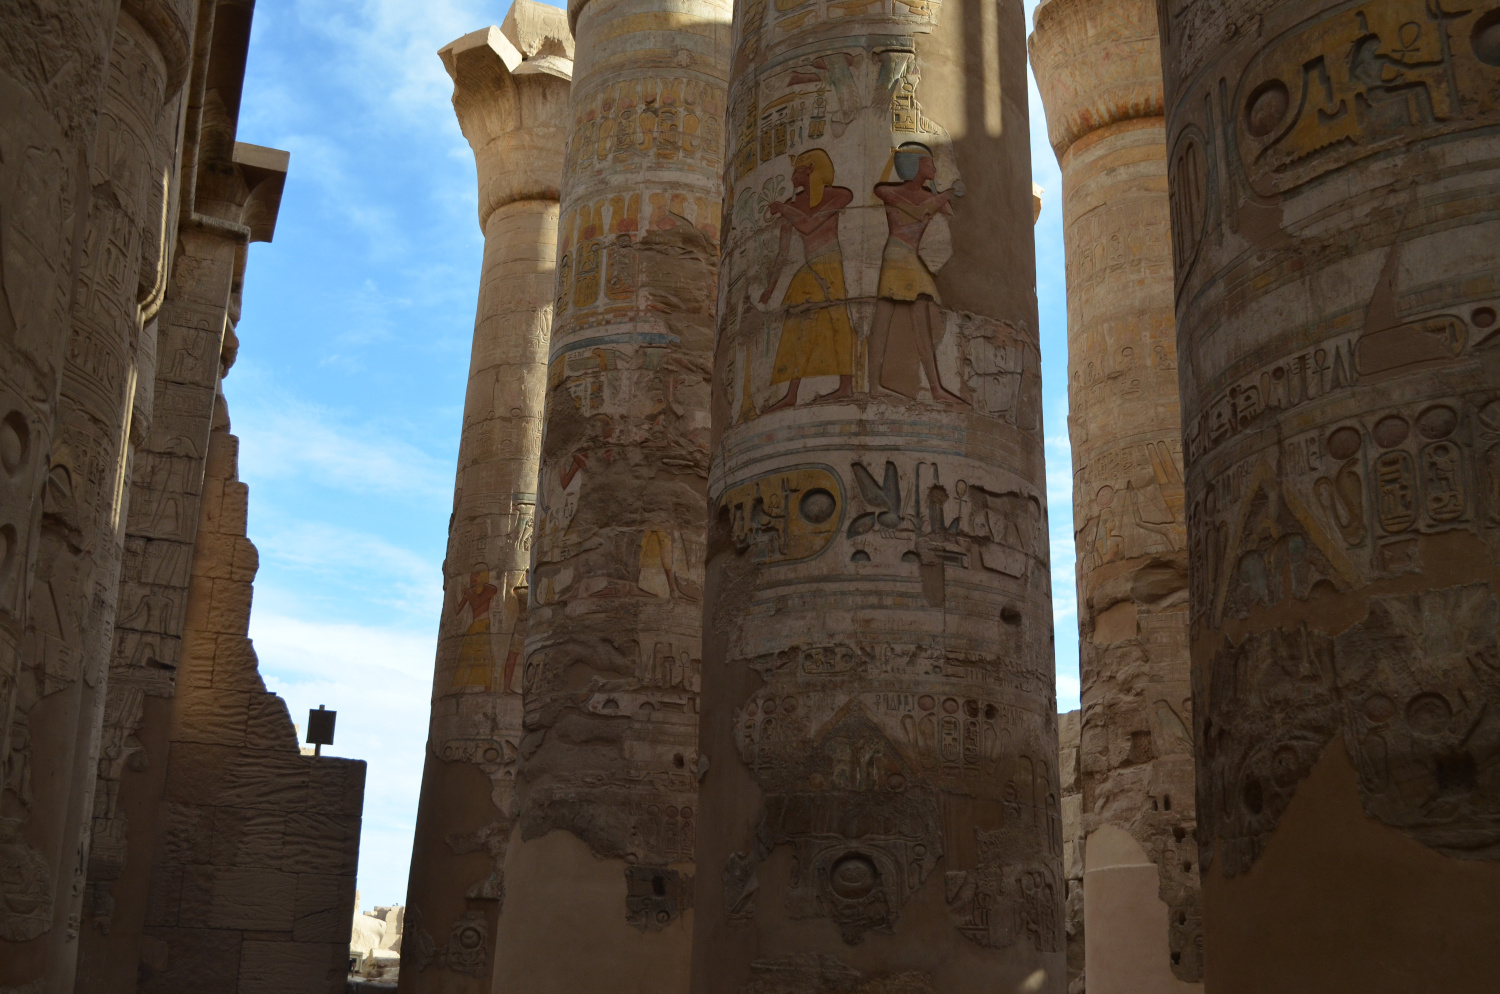  
Columnas de la Gran Sala Hipóstila en el templo de Karnak